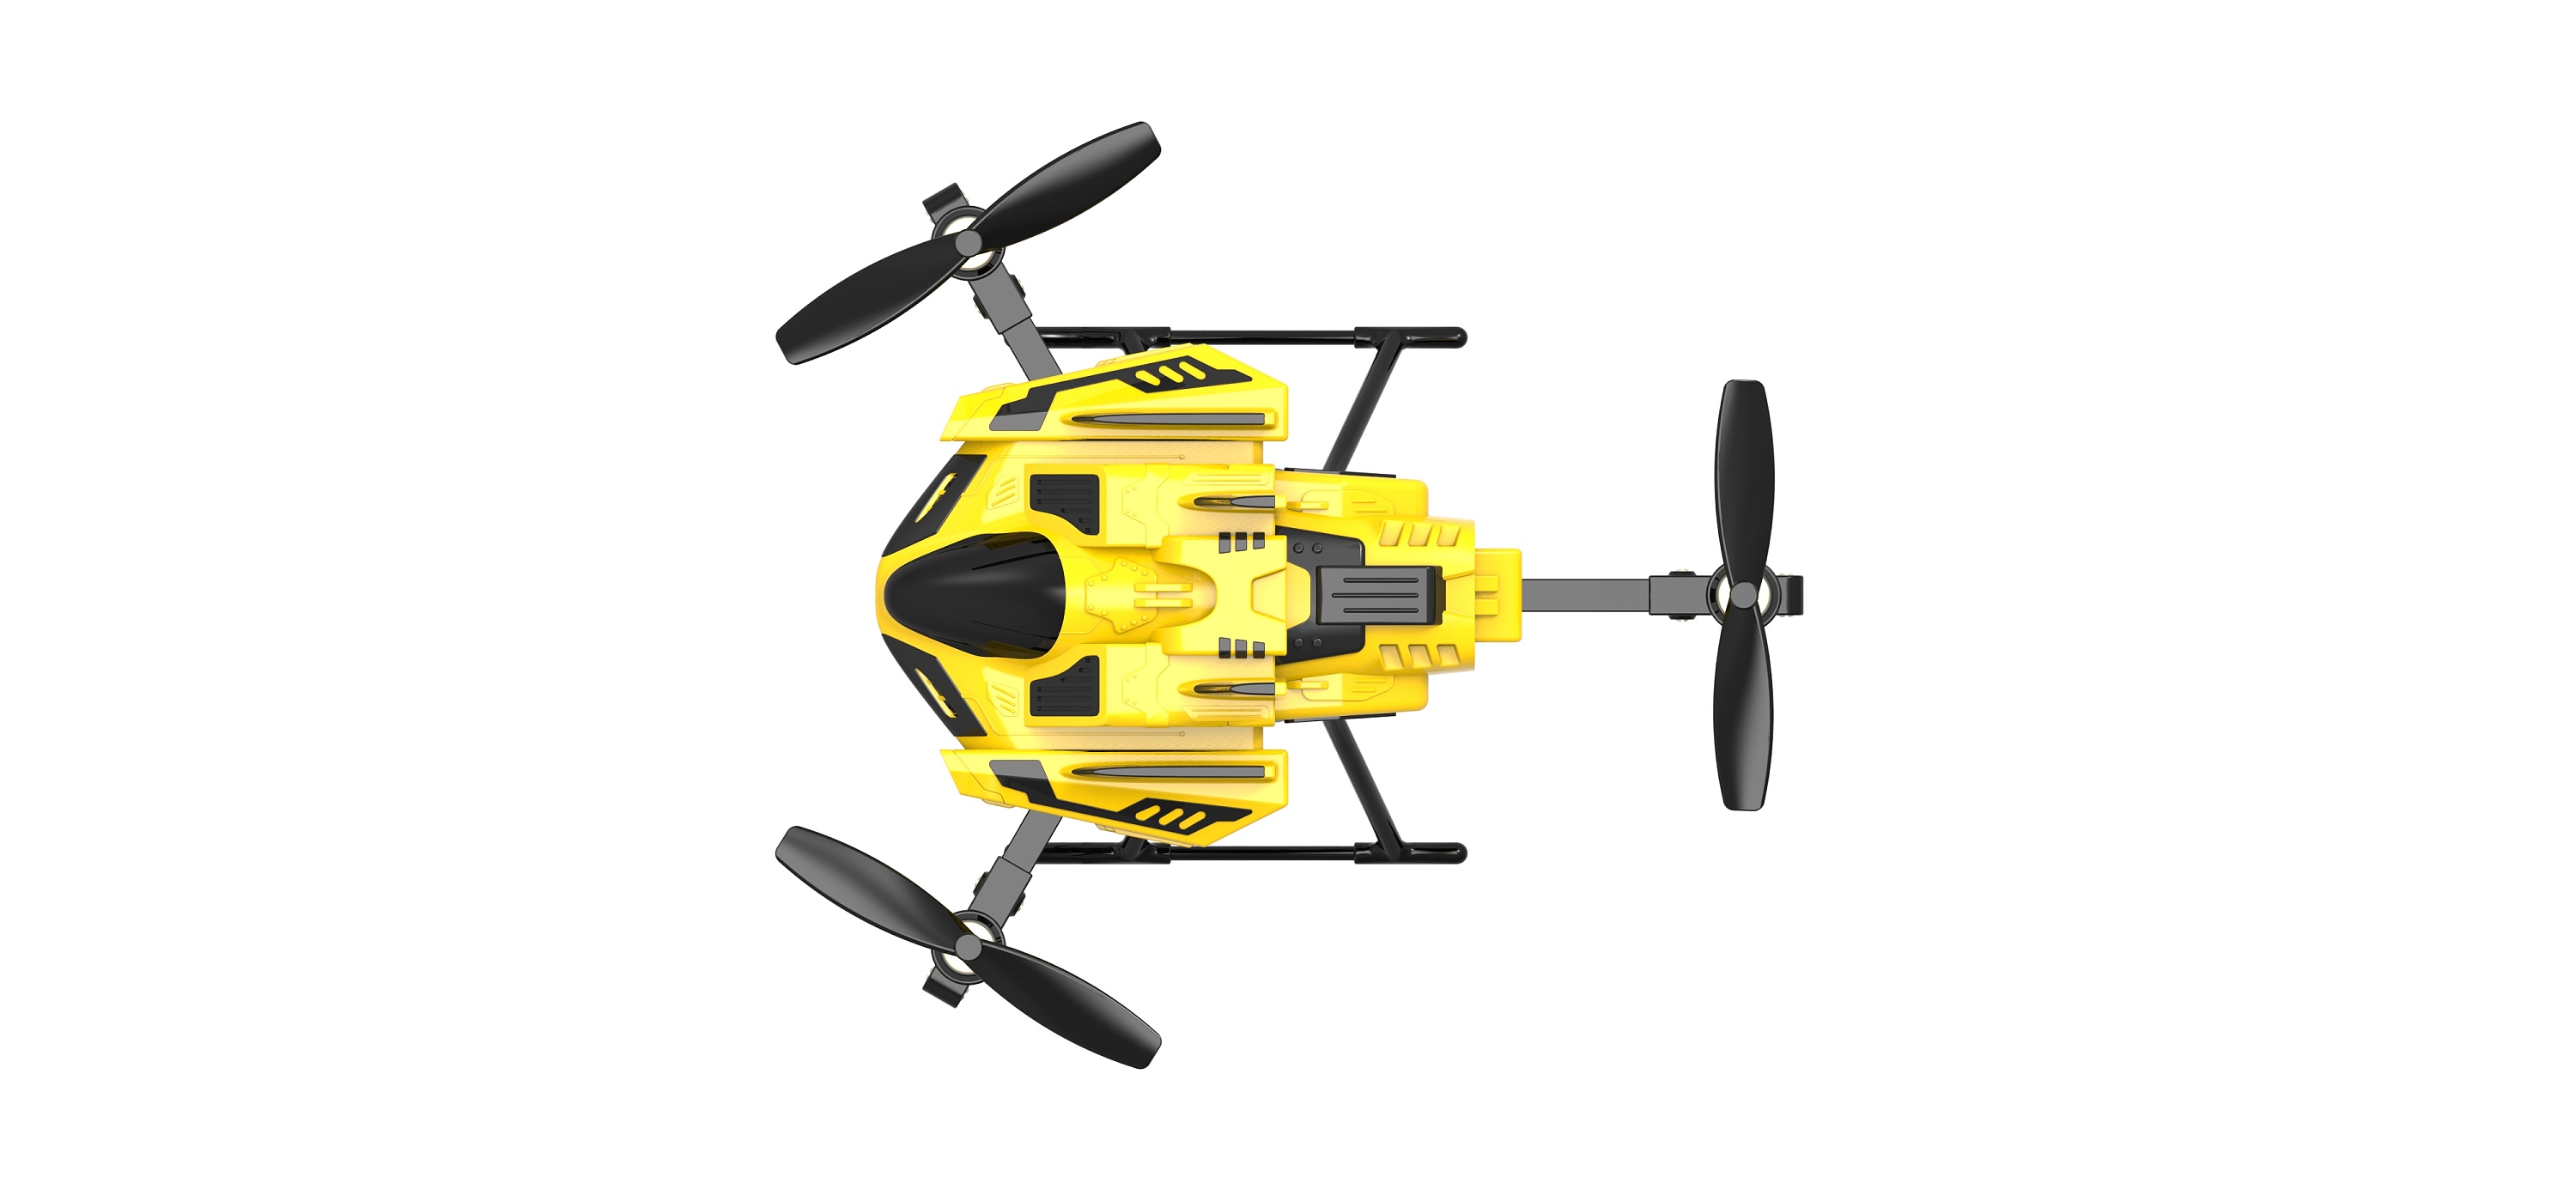 直升飞机课程_大颗粒儿童早教积木玩具直升飞机造型搭建图文|视频教程|作品-机变酷卡